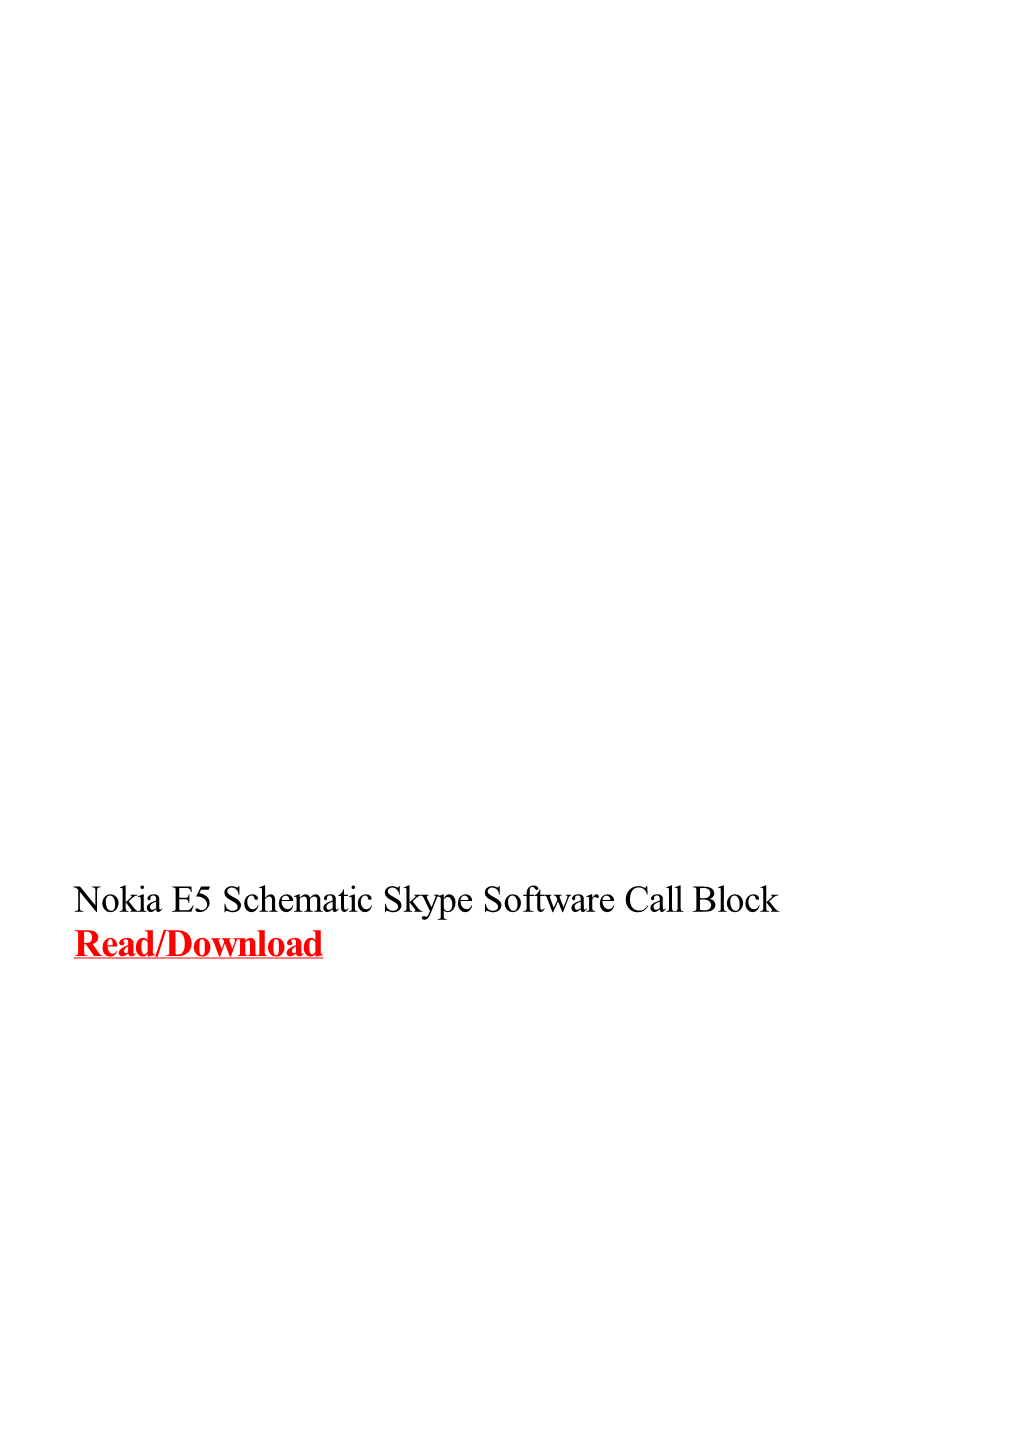 Nokia E5 Schematic Skype Software Call Block.Pdf